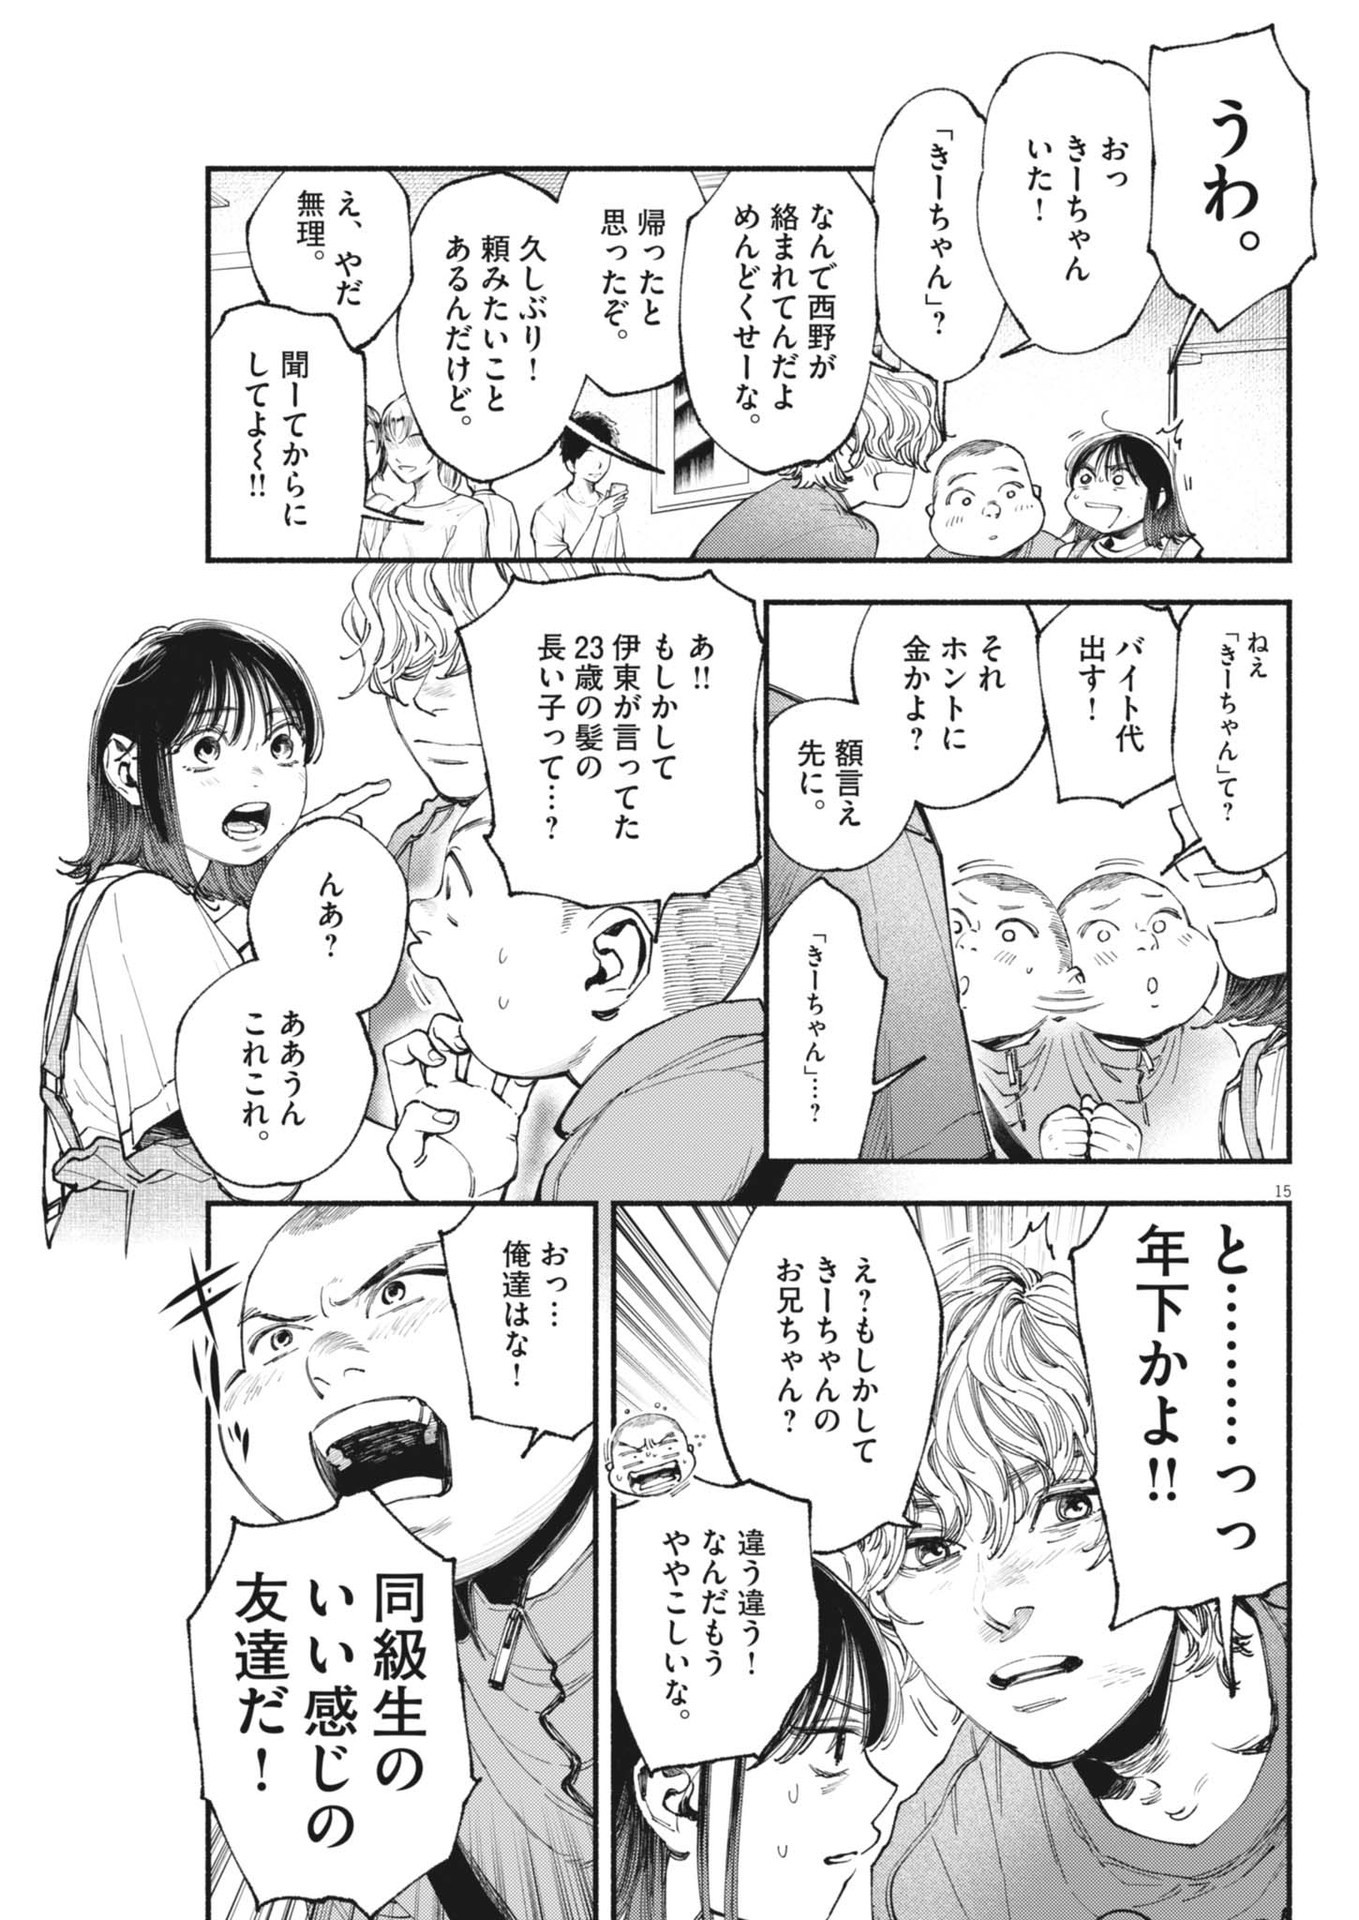 Konoyo wa Tatakau Kachi ga Aru  - Chapter 27 - Page 15